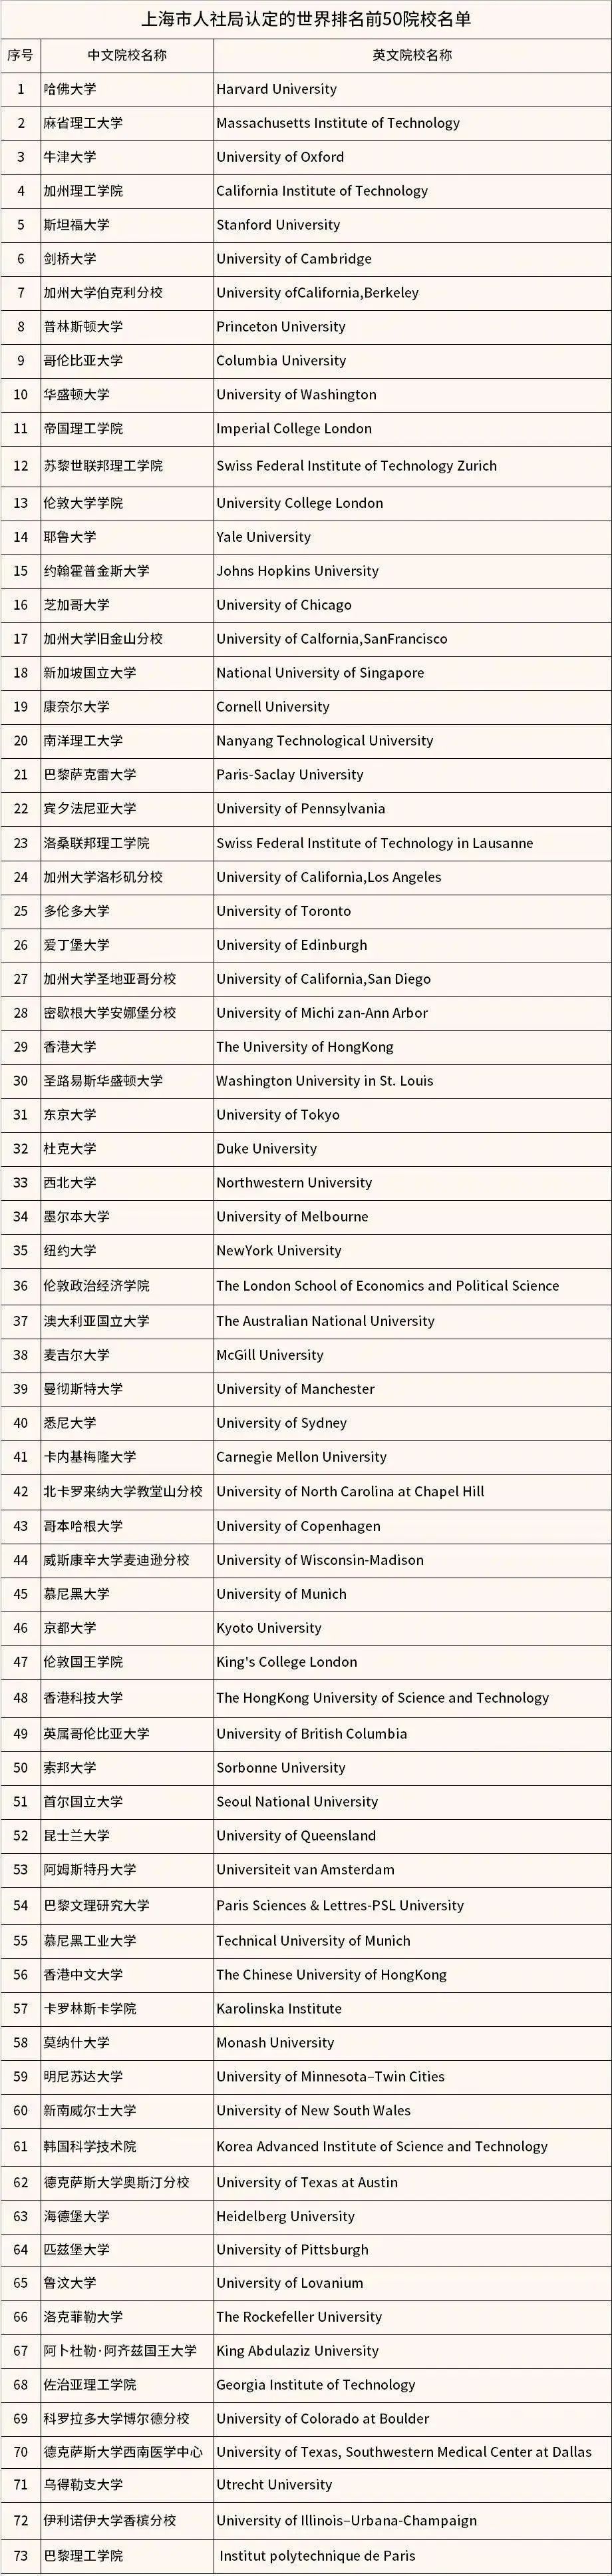 上海人社局认定的世界前50院校名单